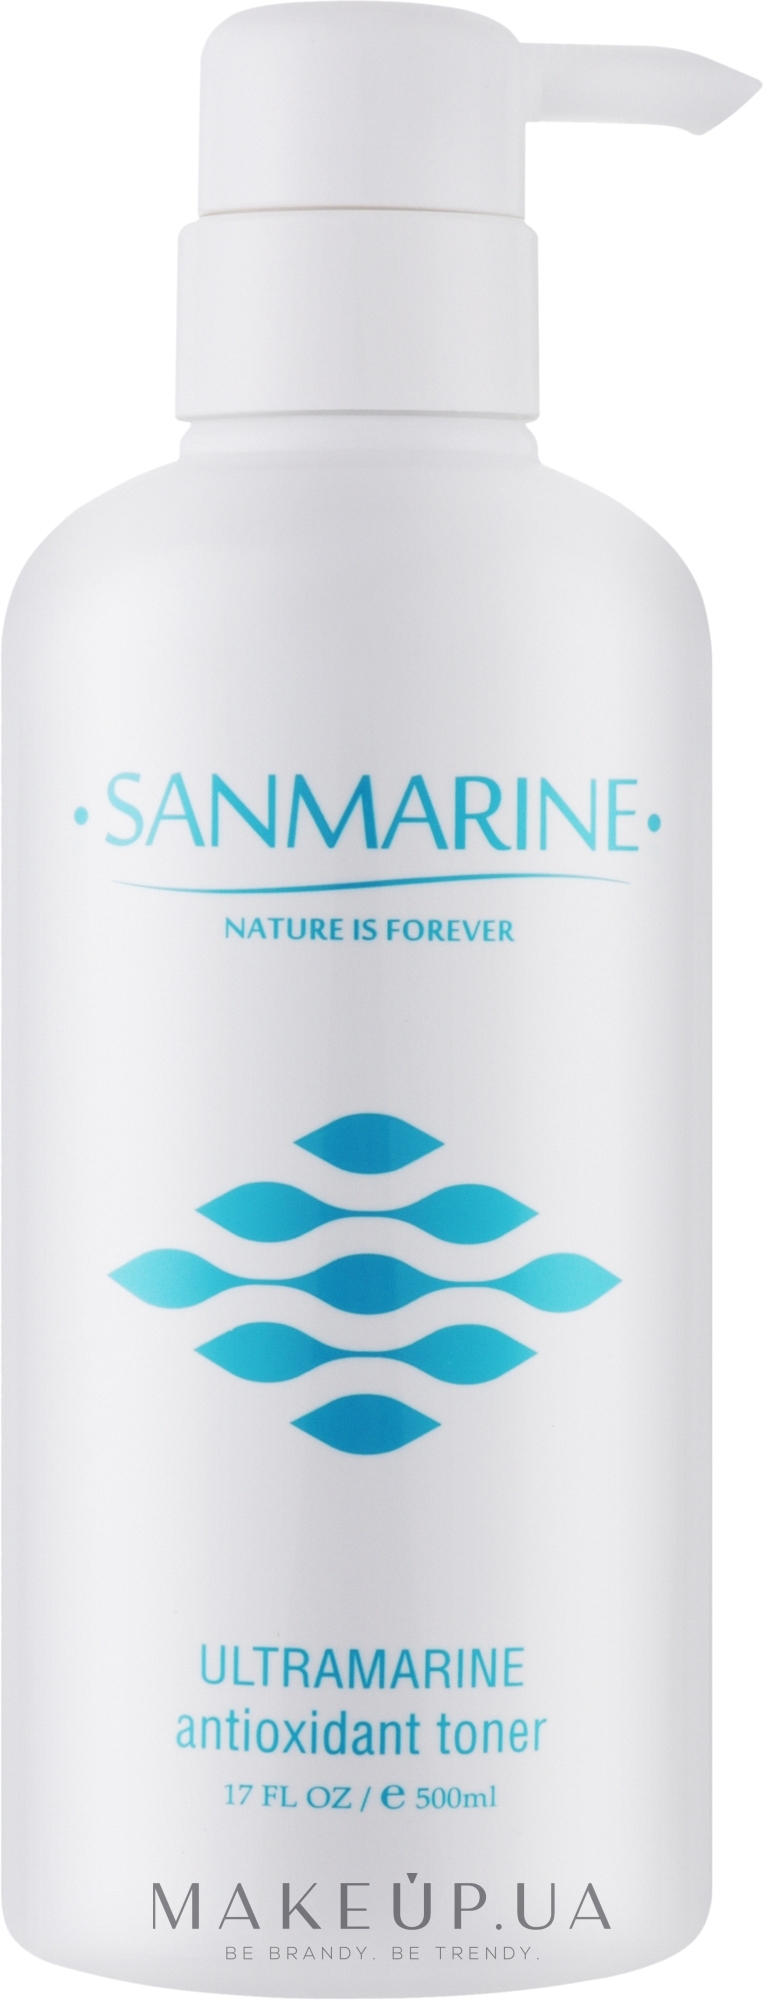 Антиоксидантный тоник для лица - Sanmarine Ultramarine Antioxidant Toner — фото 500ml